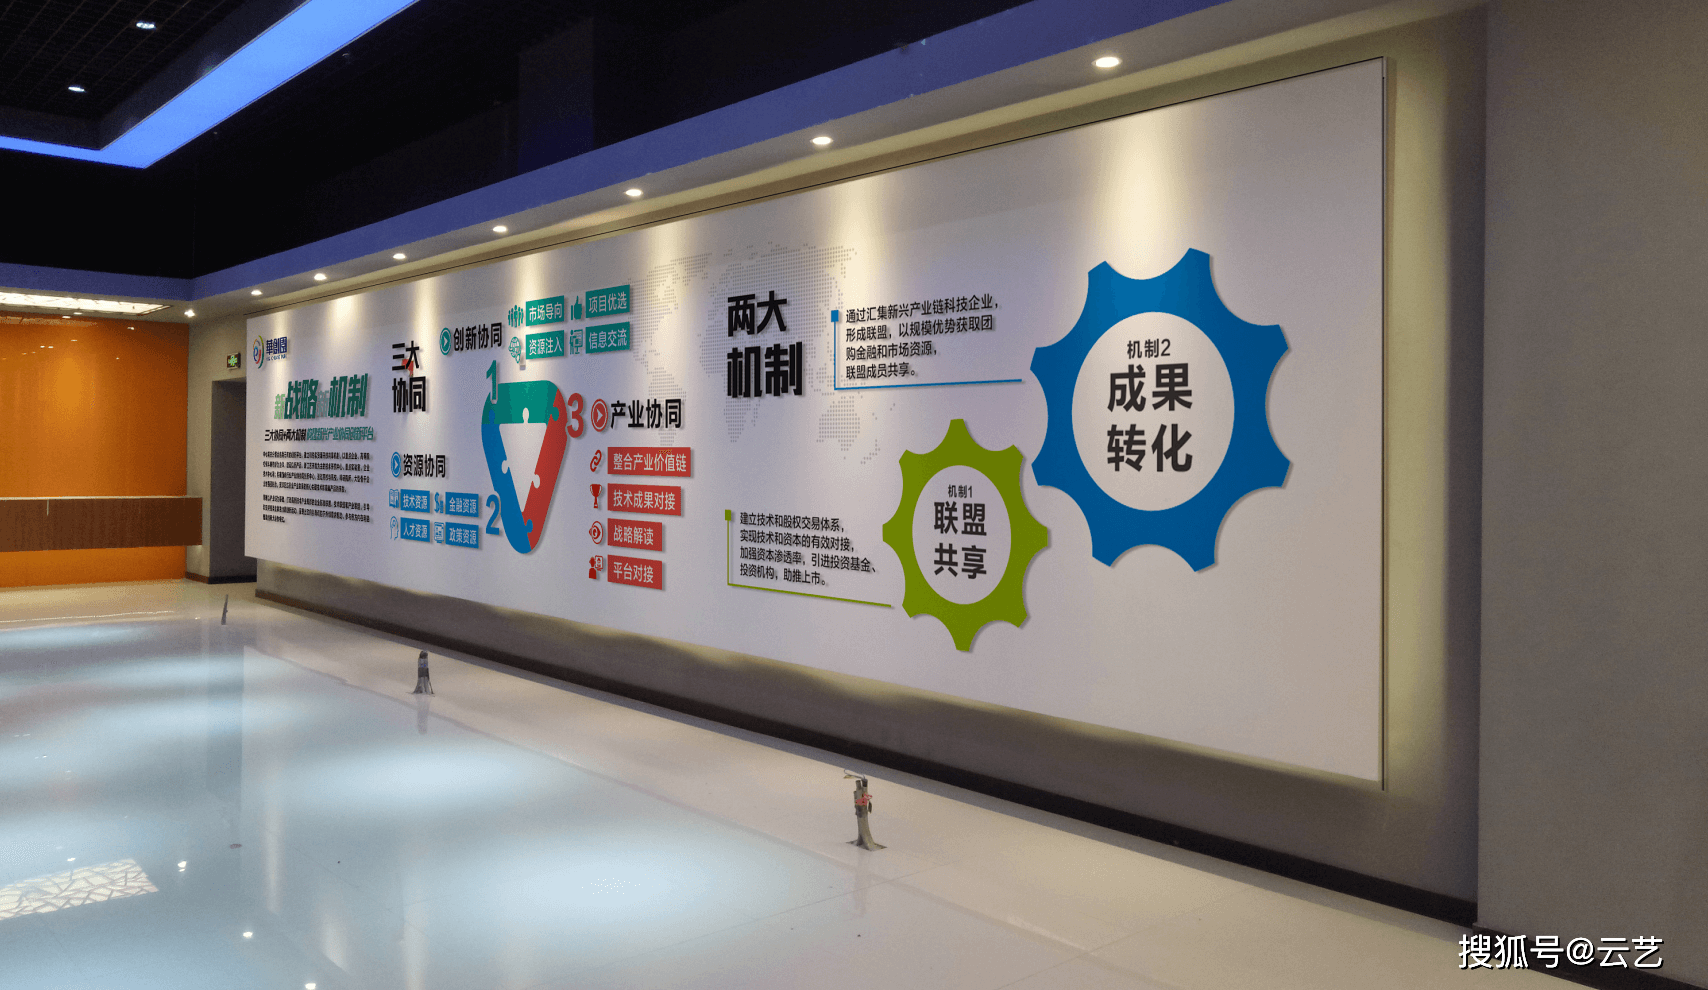 湖南云艺广告传媒有限公司文化墙的己任文化墙是以倡导文明,宣传公益